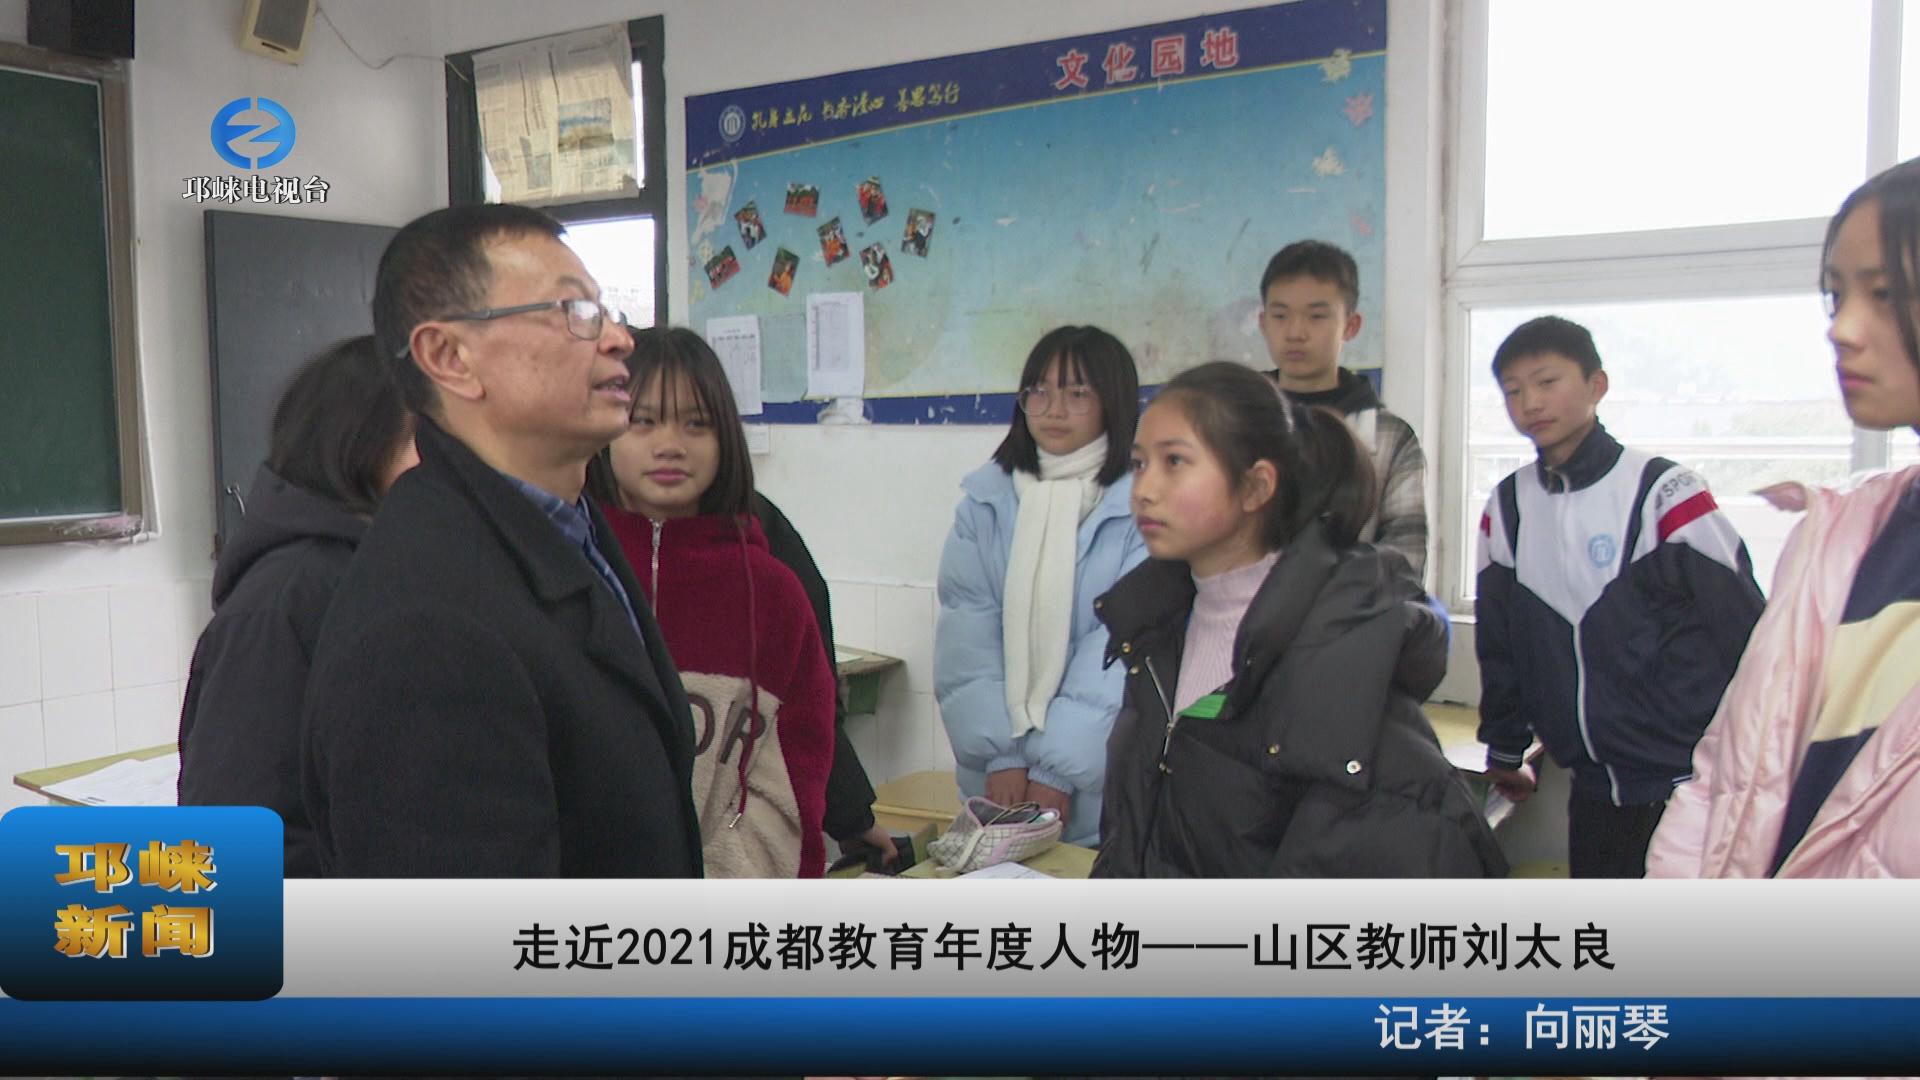 【20220111】走近2021成都教育年度人物――山区教师刘太良